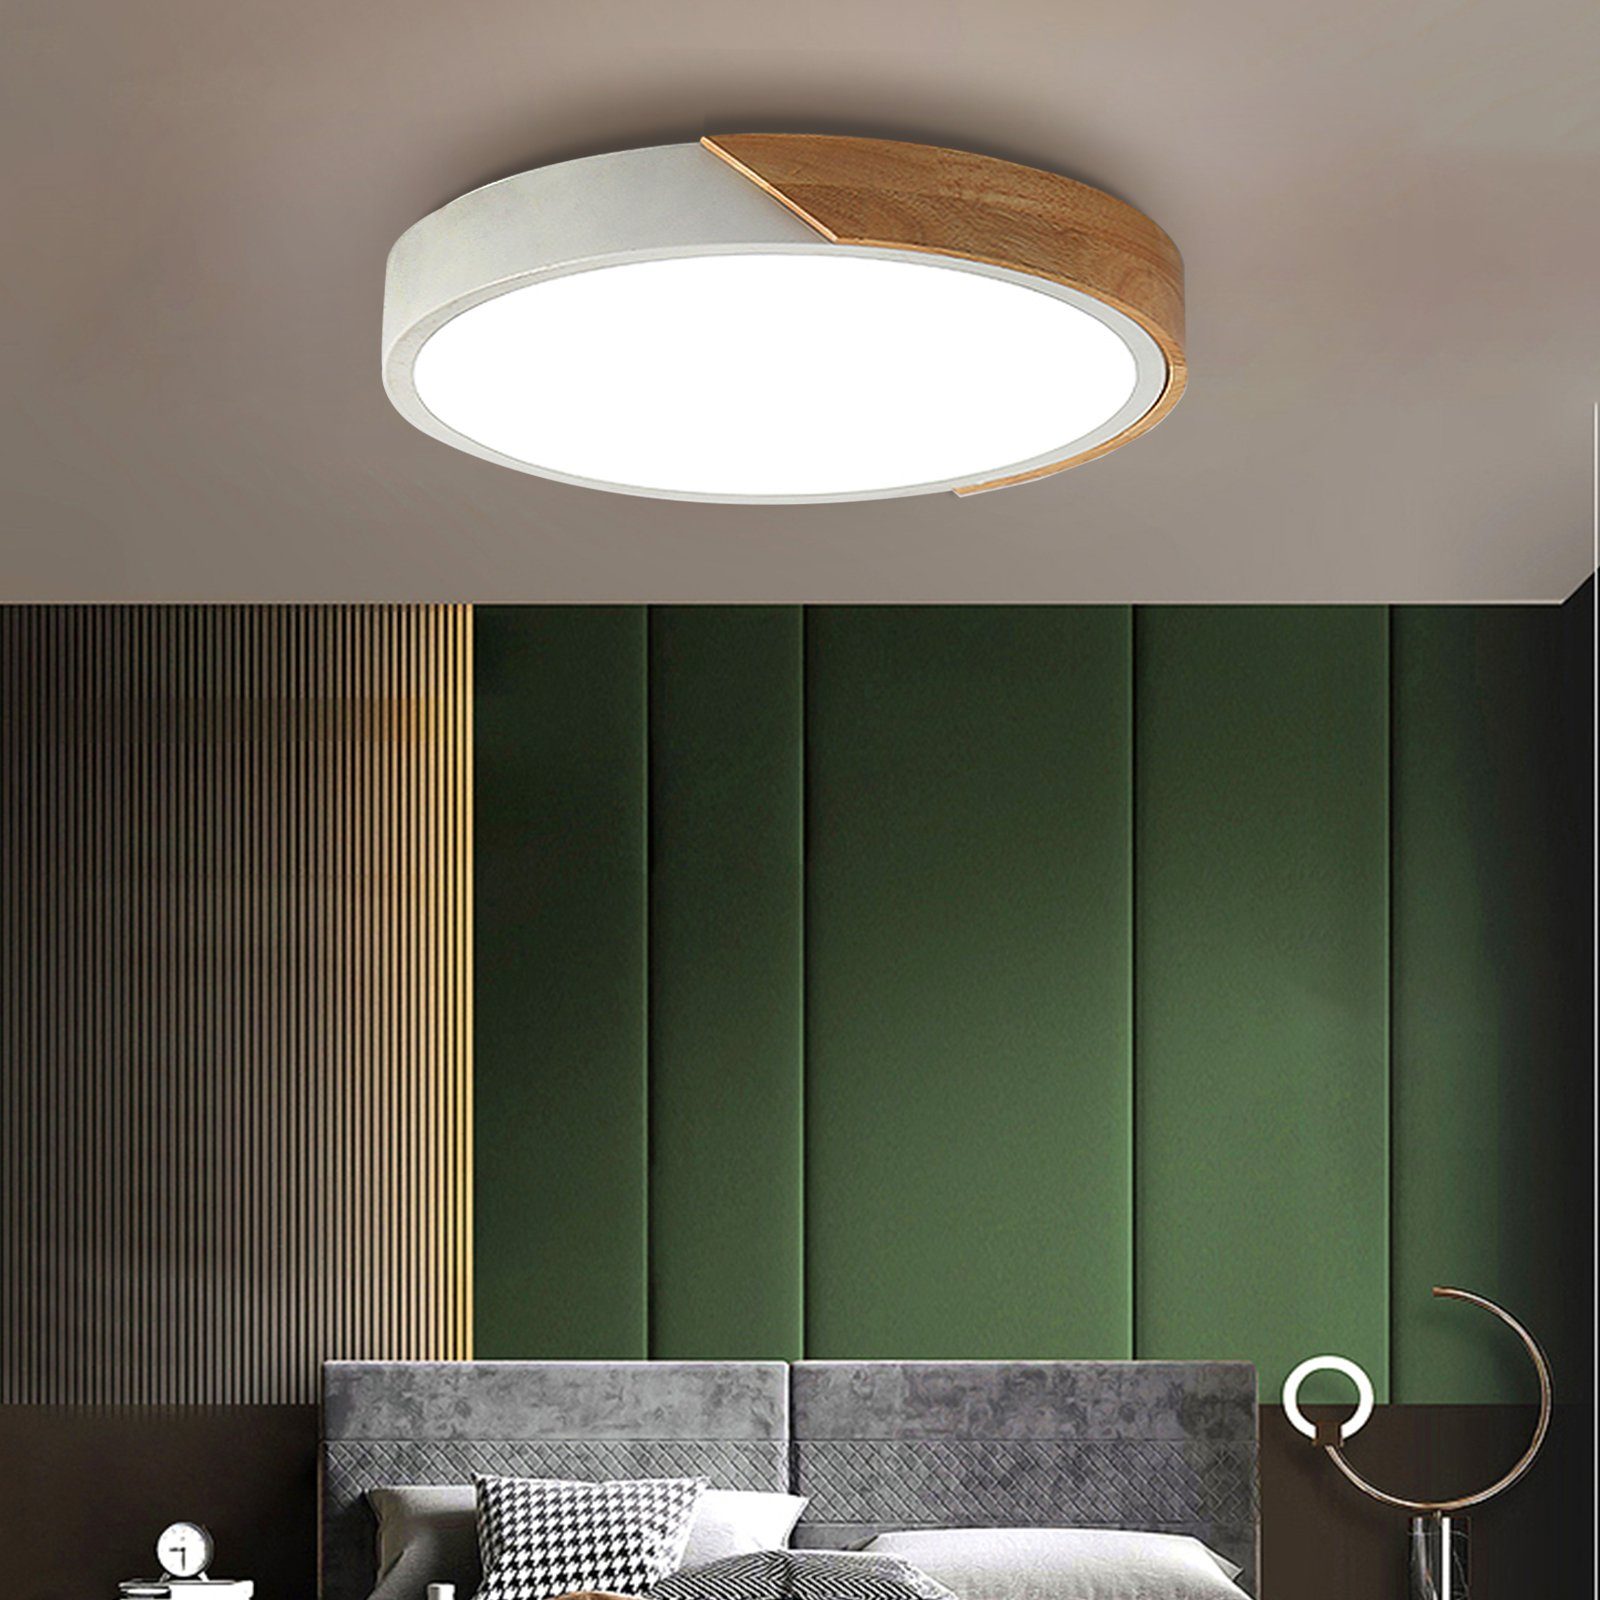 Natsen Deckenleuchte, 24W LED Deckenlampe Holz rund (40 x 40 x 5cm),  dimmbar mit Fernbedienung warmweiss-kaltweiss Lampe, LED fest integriert,  für Esszimmer Kinderzimmer Schlafzimmer